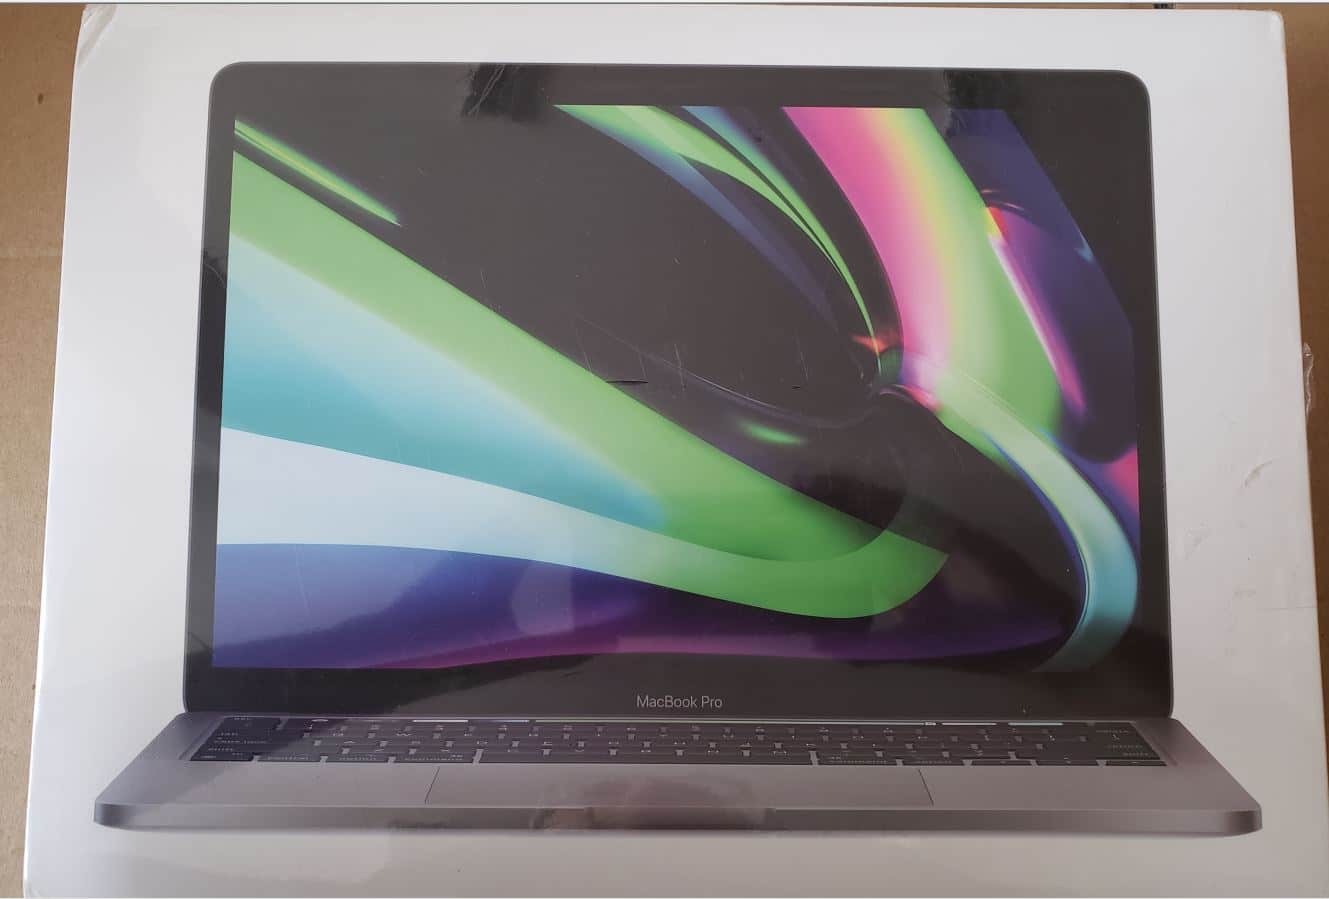 Leilão de um MacBook Pro M1